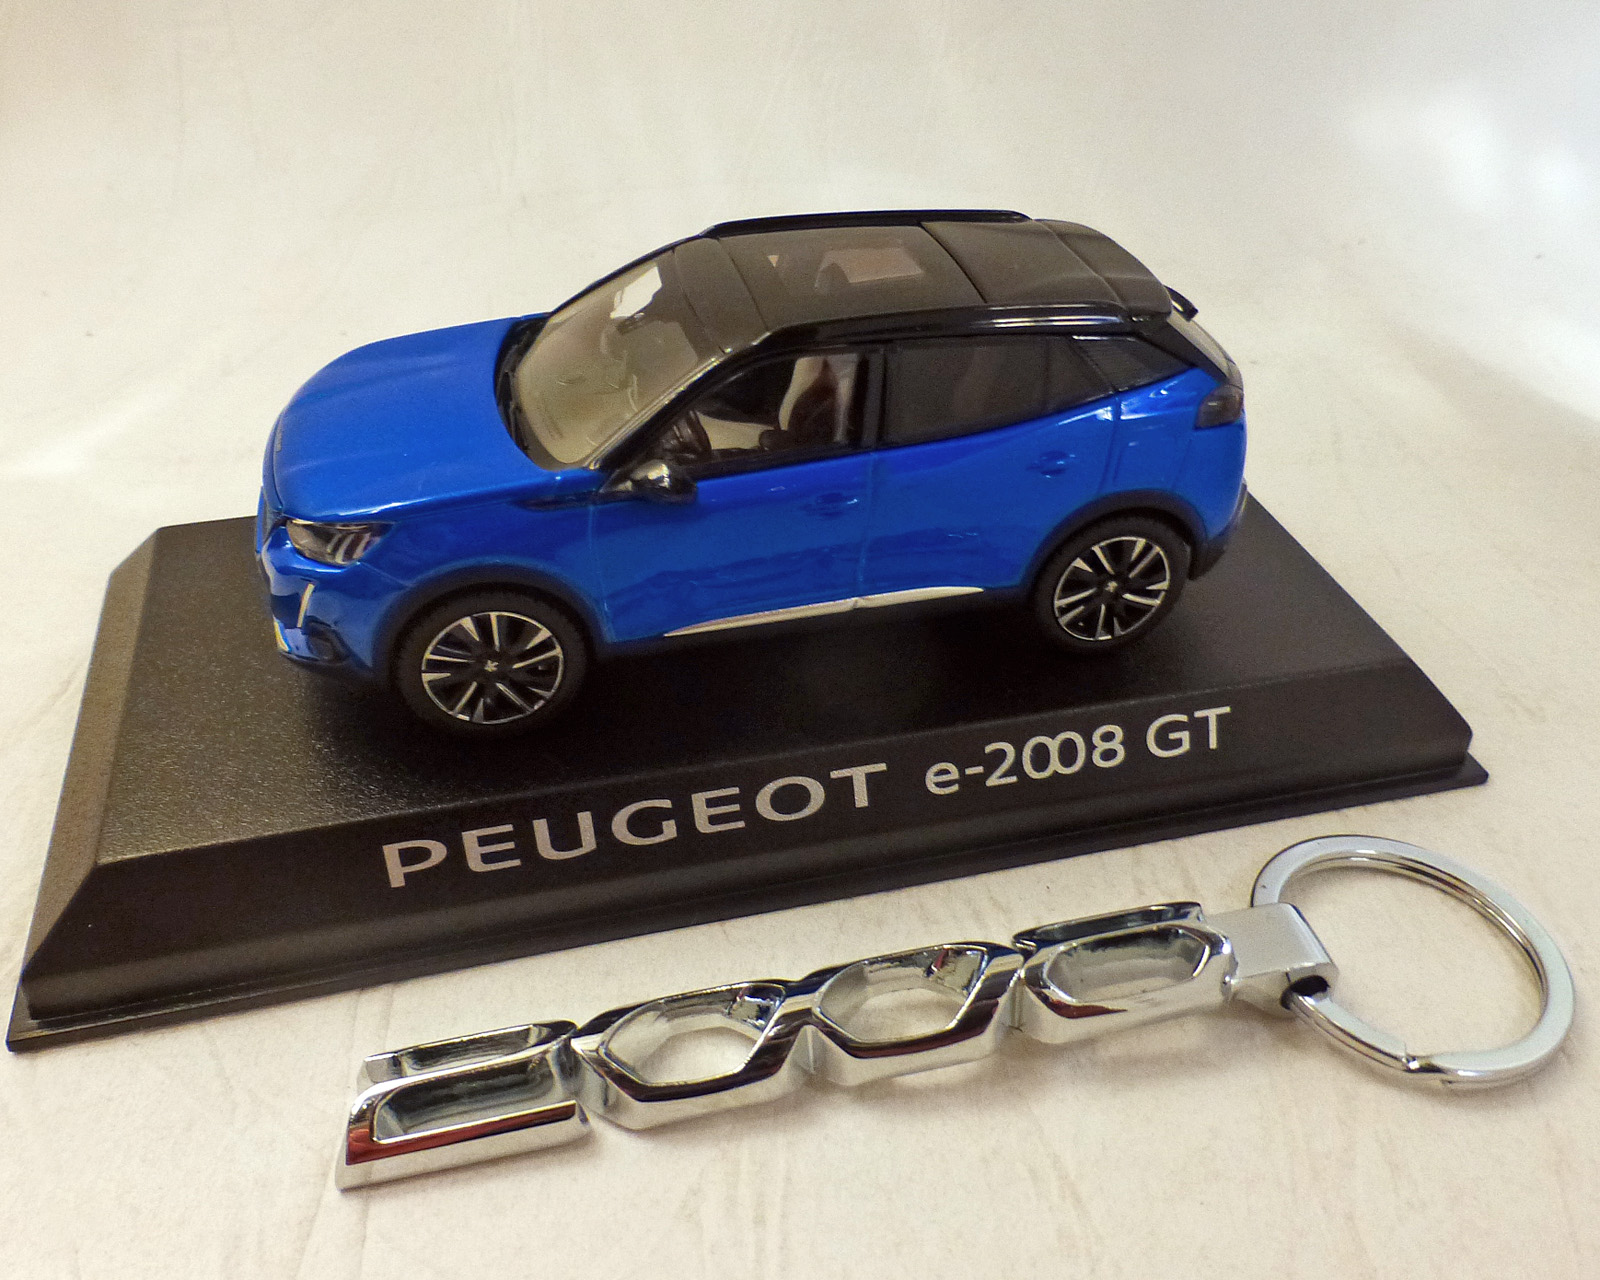 Peugeot 2008-e GT 2020, blau-Met. incl. Schlüsselanhänger